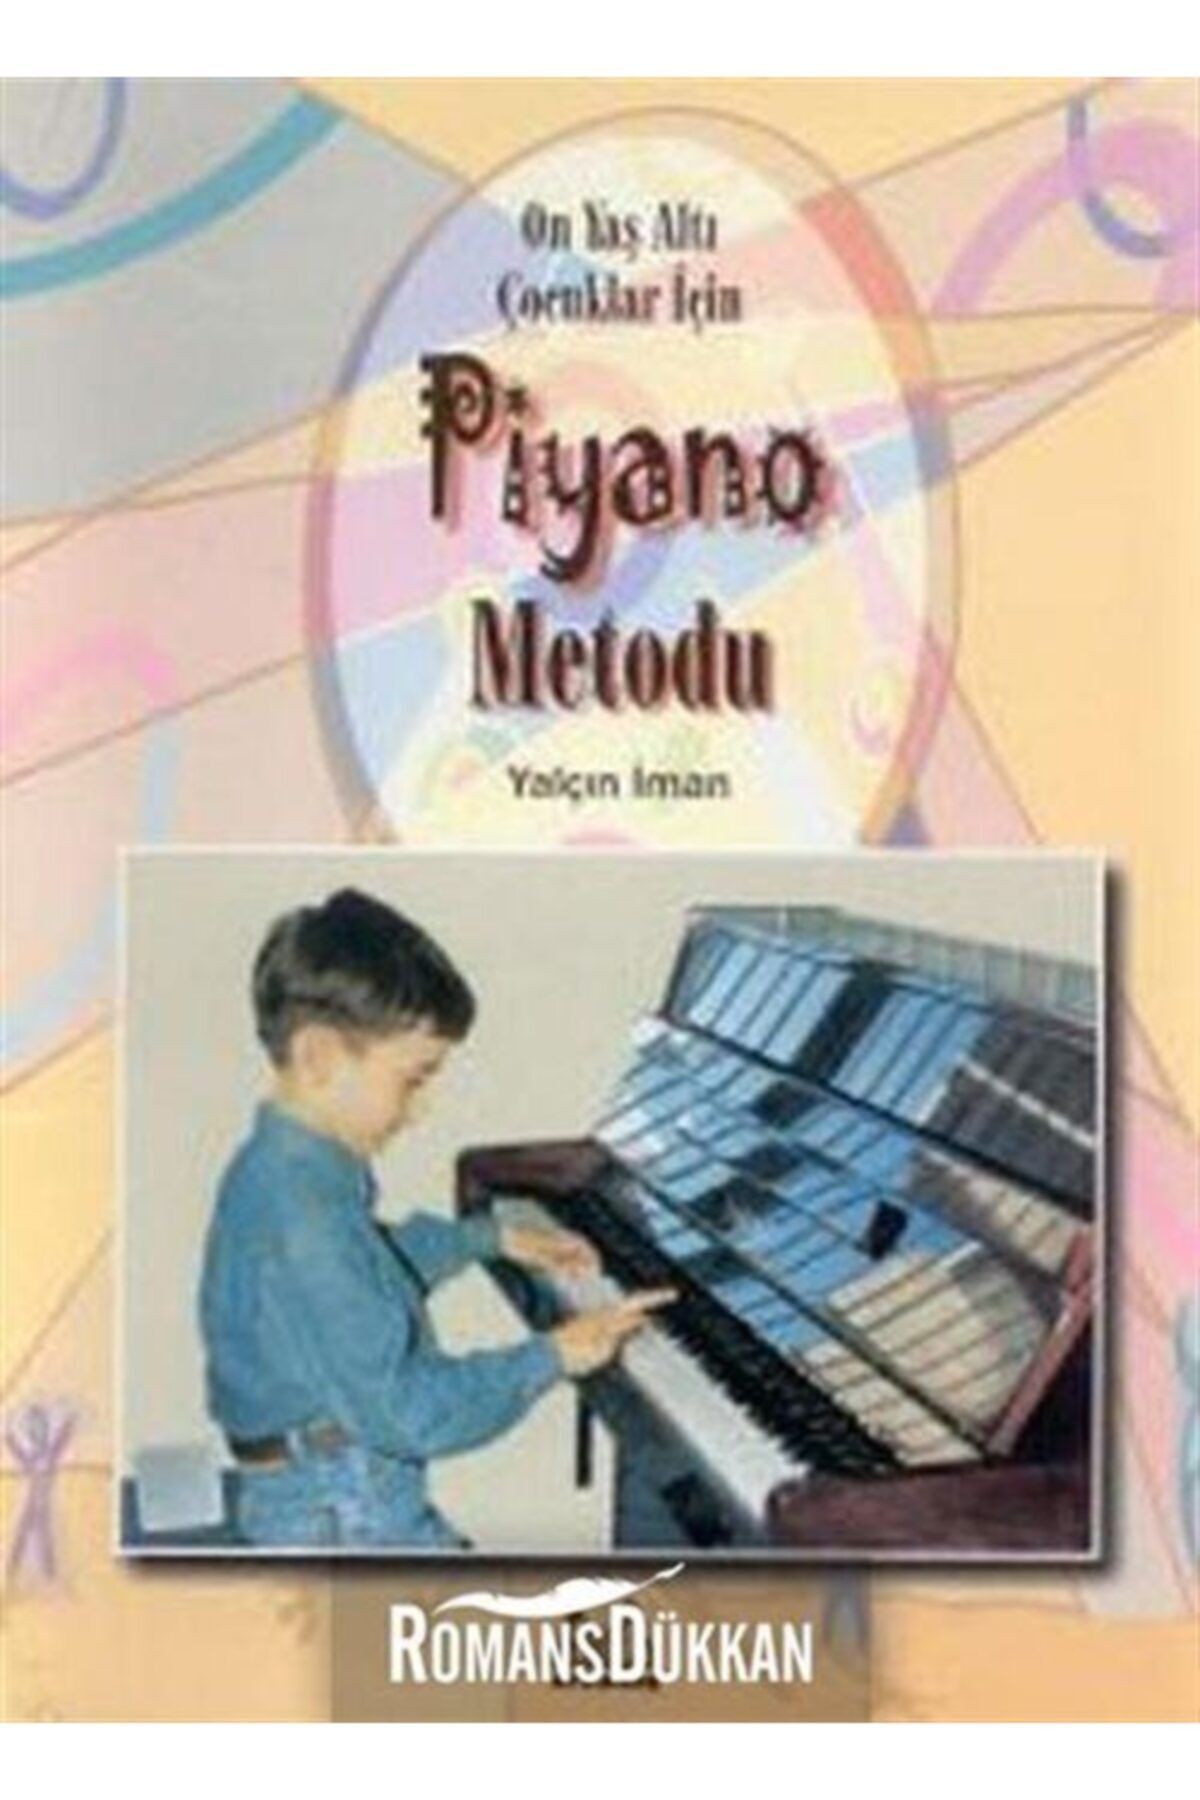 Arkadaş Yayıncılık 10 Yaş Altı Çocuklar İçin Piyano Metodu